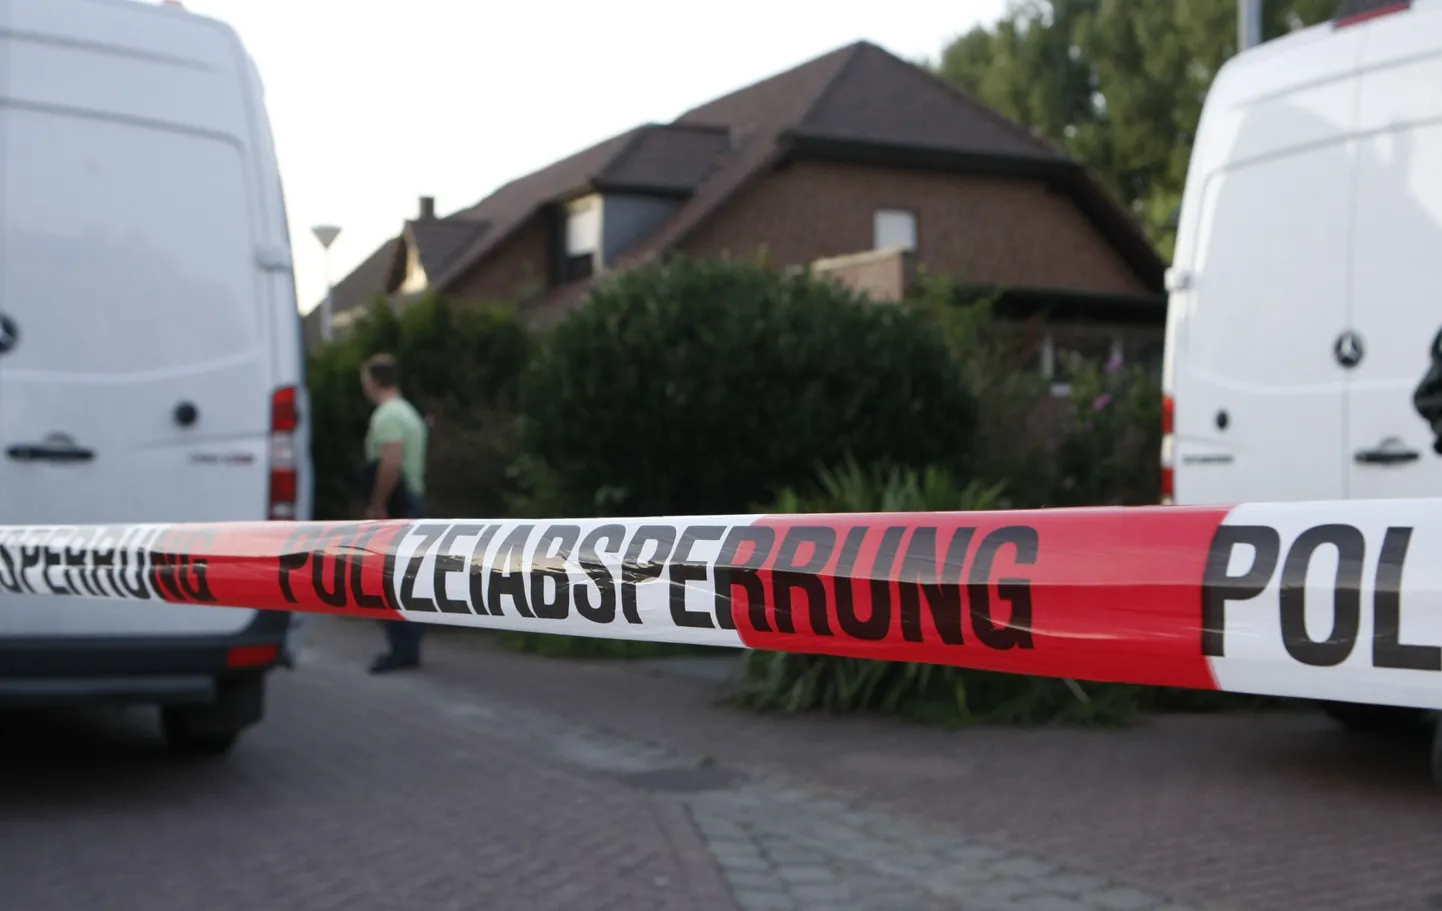 Schwalmtalis toimunud tulistamises hukkus kolm inimest